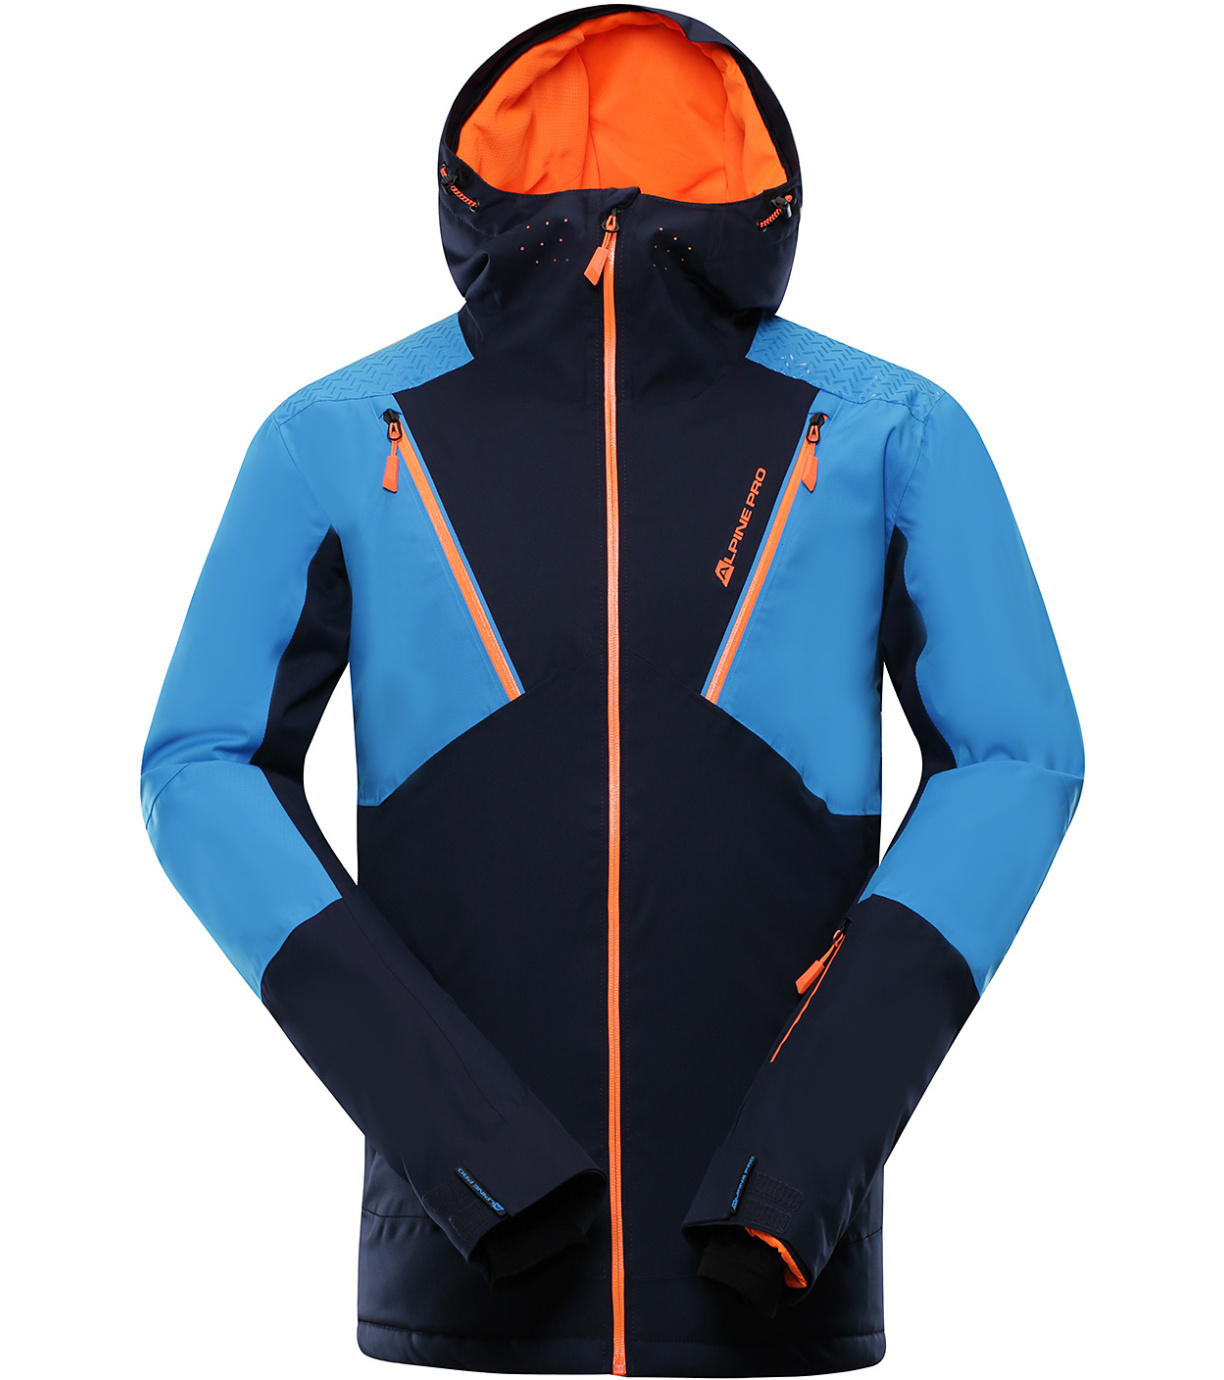 Pánská lyžařská bunda MIKAER 3 ALPINE PRO mood indigo